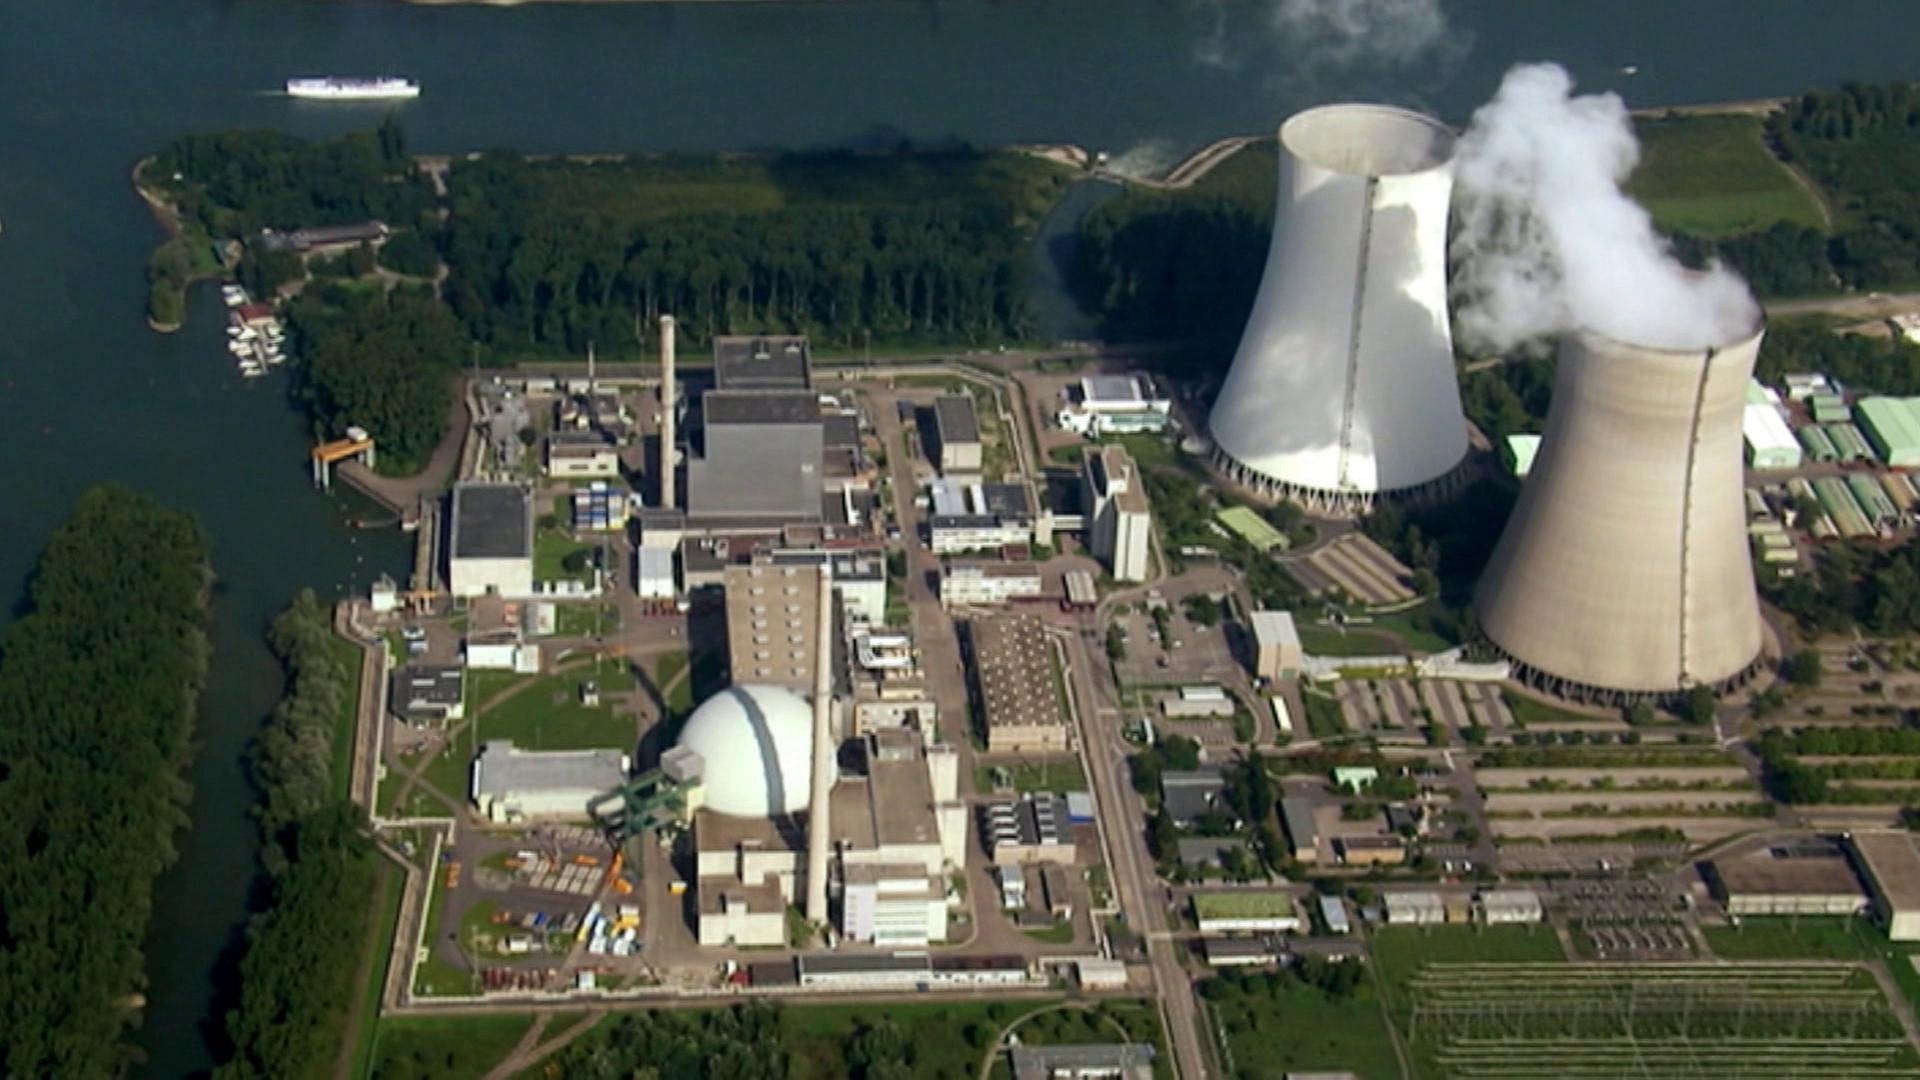 Wie funktioniert ein Kernkraftwerk? · Frage trifft Antwort